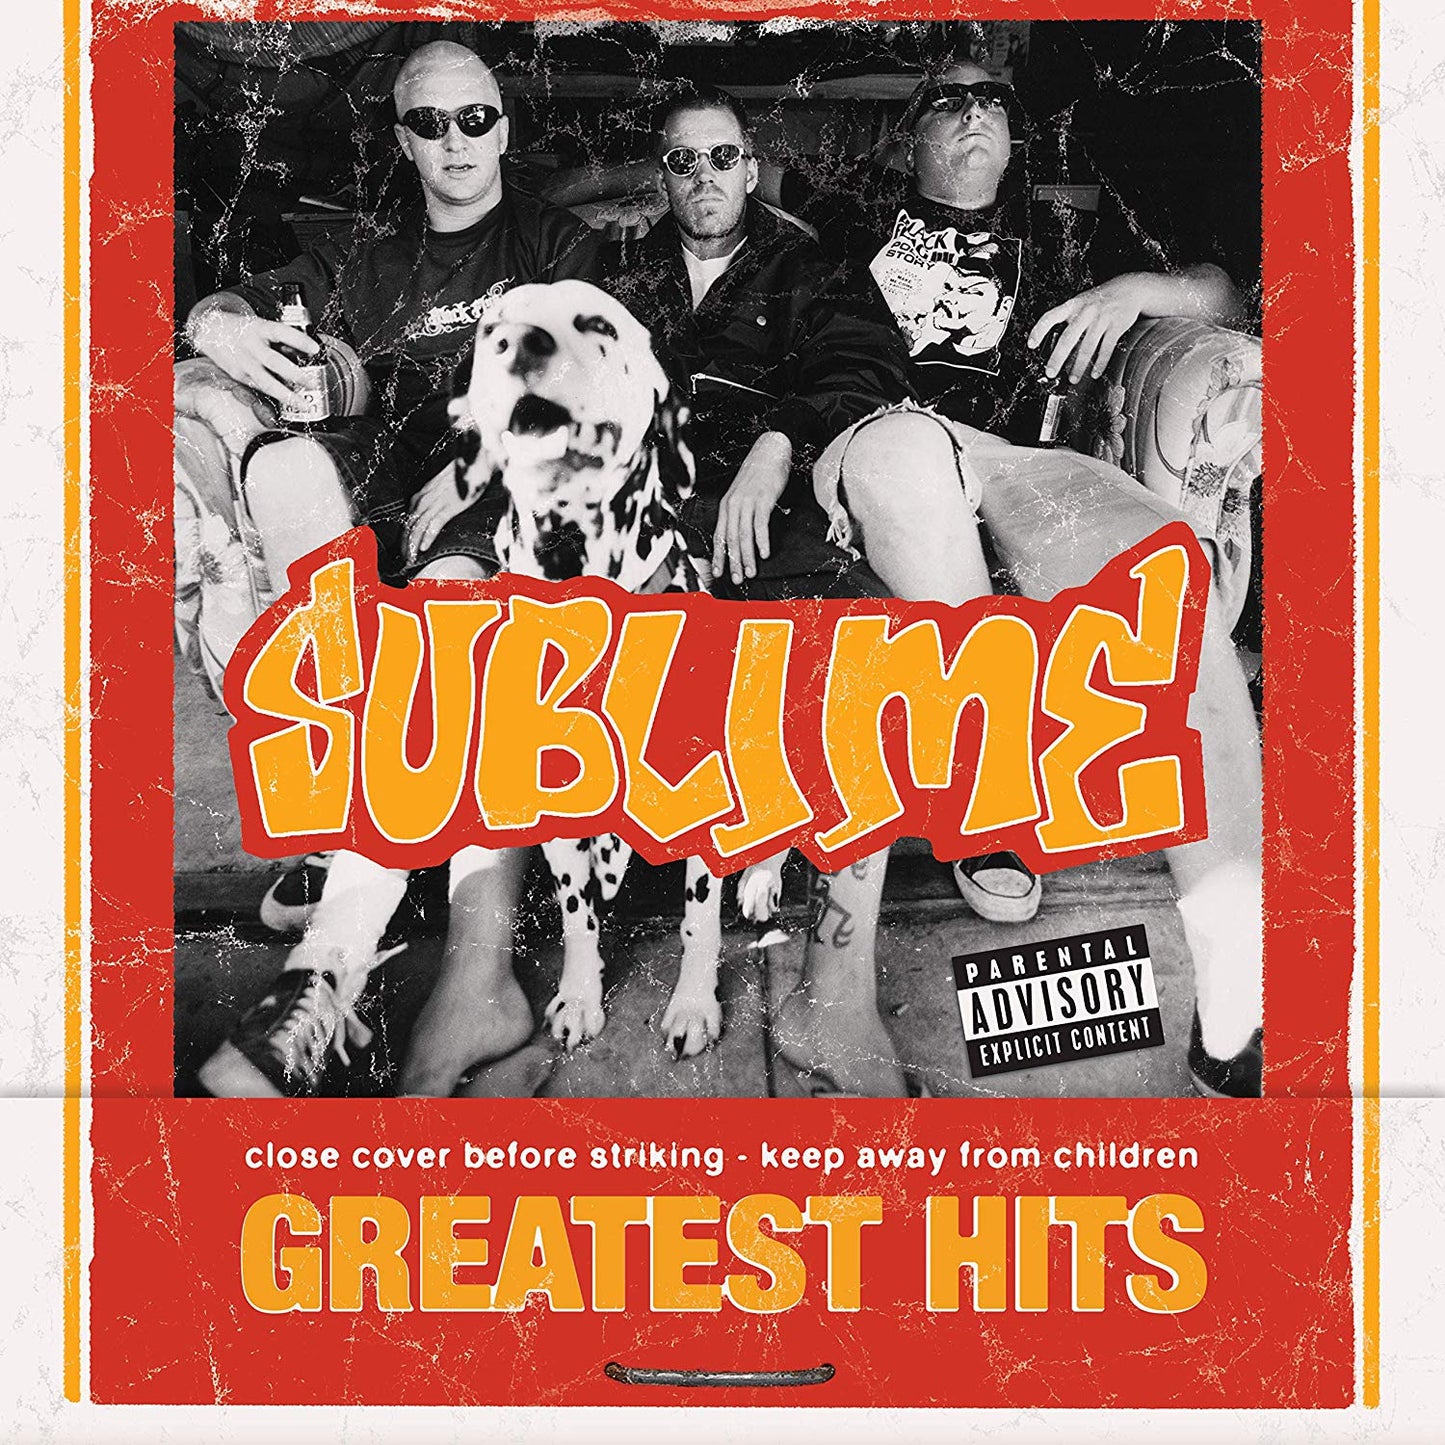 Sublime - Greatest Hits [LP] - Vinyl